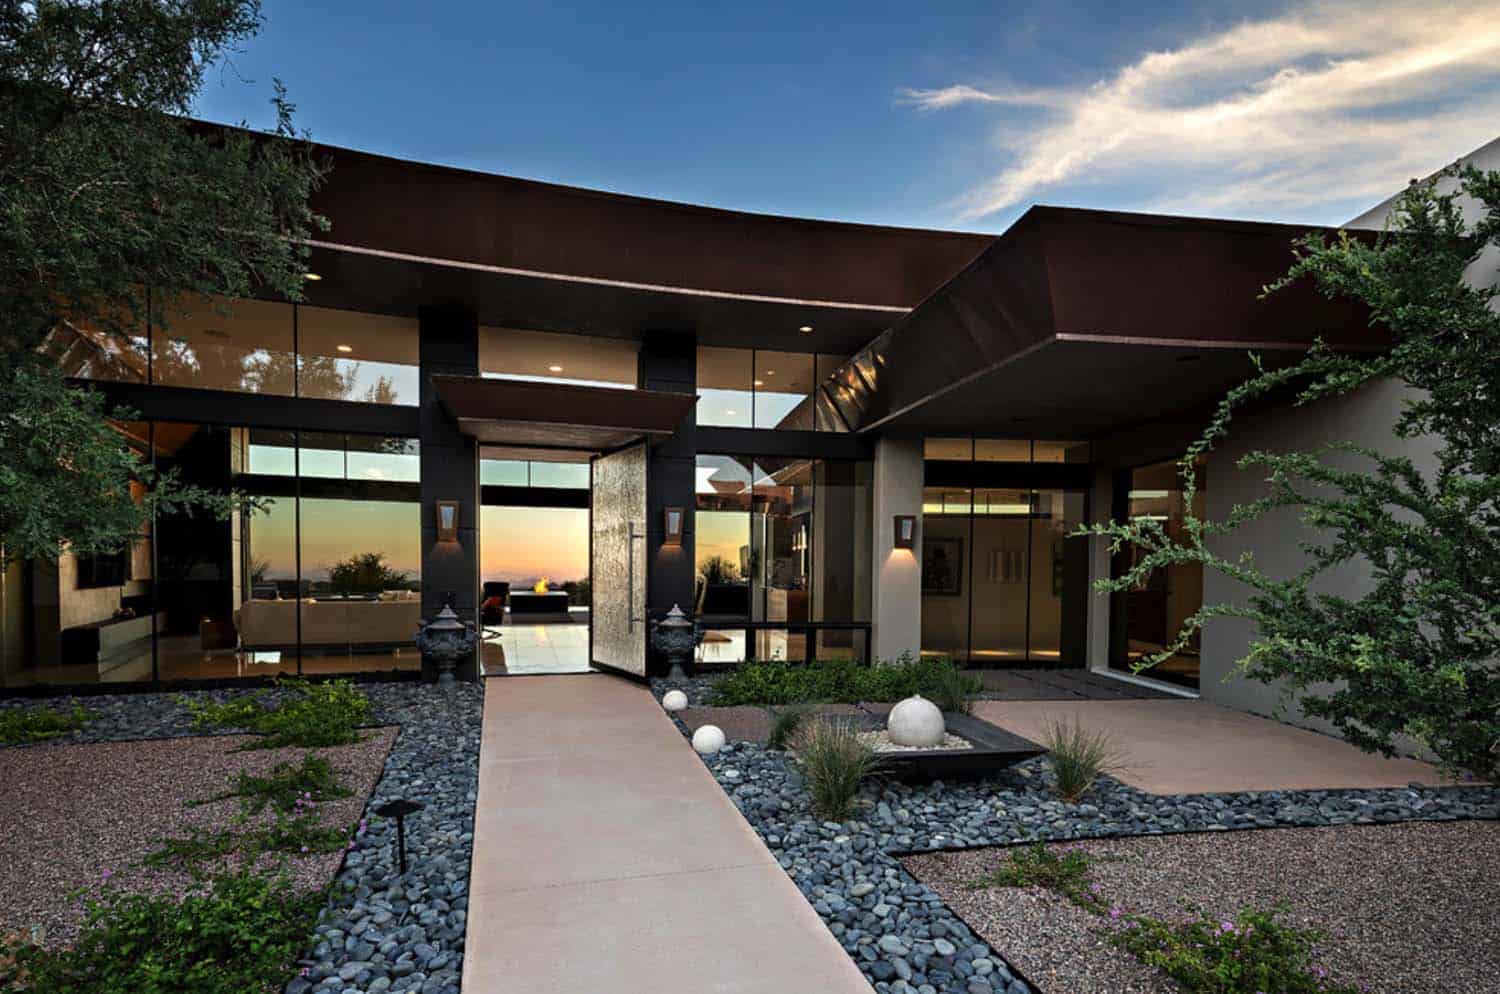 Dream home in the Arizona desert merges indoor/outdoor living